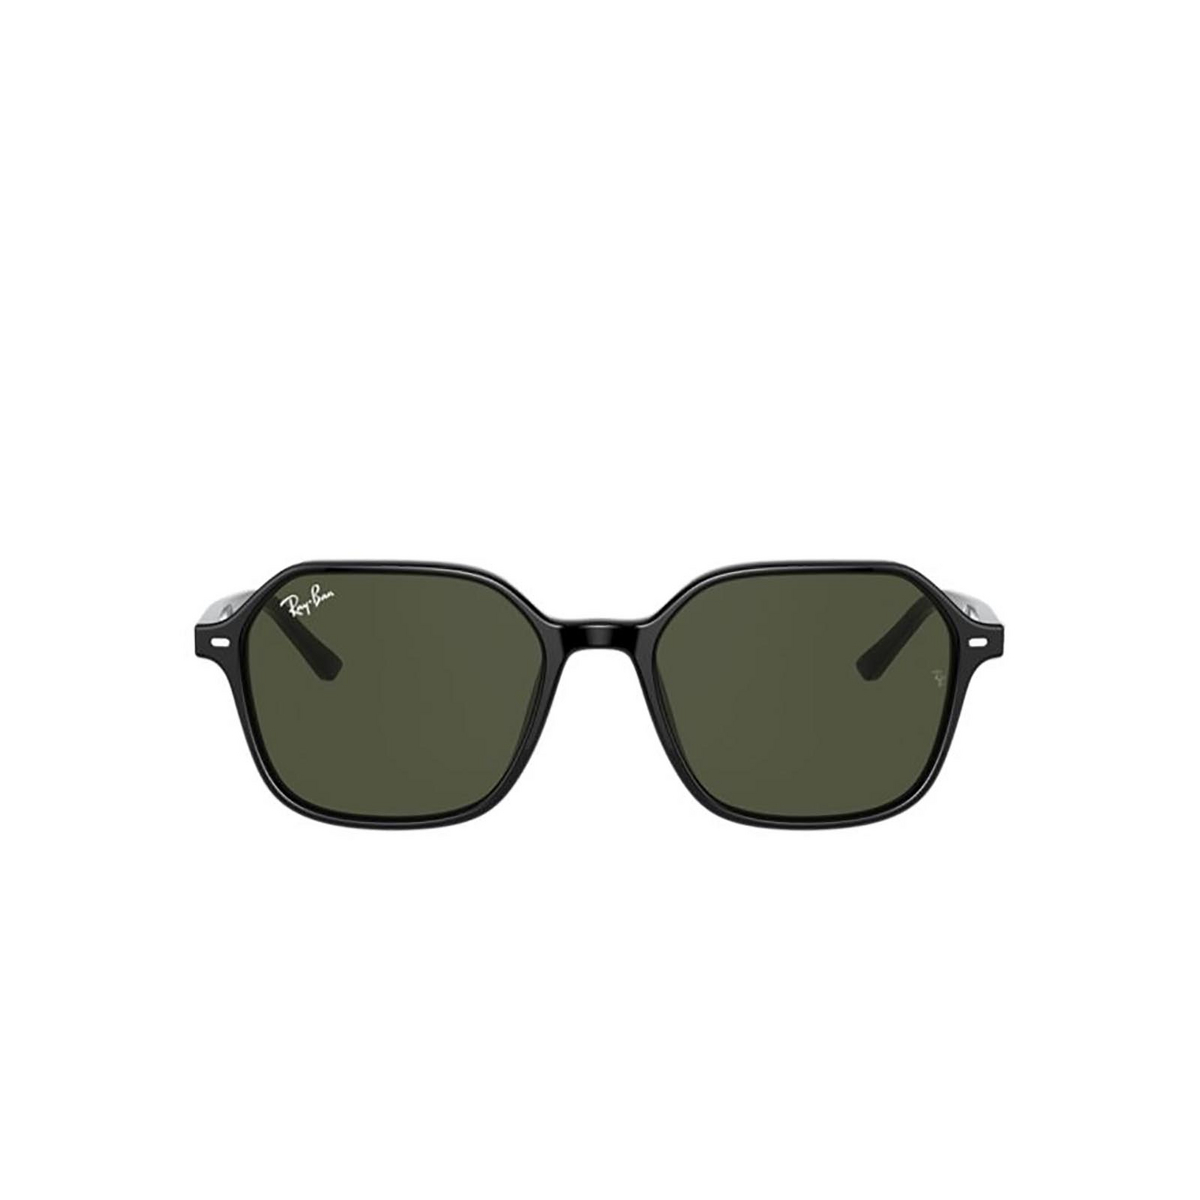 Ray-Ban JOHN Sunglasses 901/31 BLACK - front view